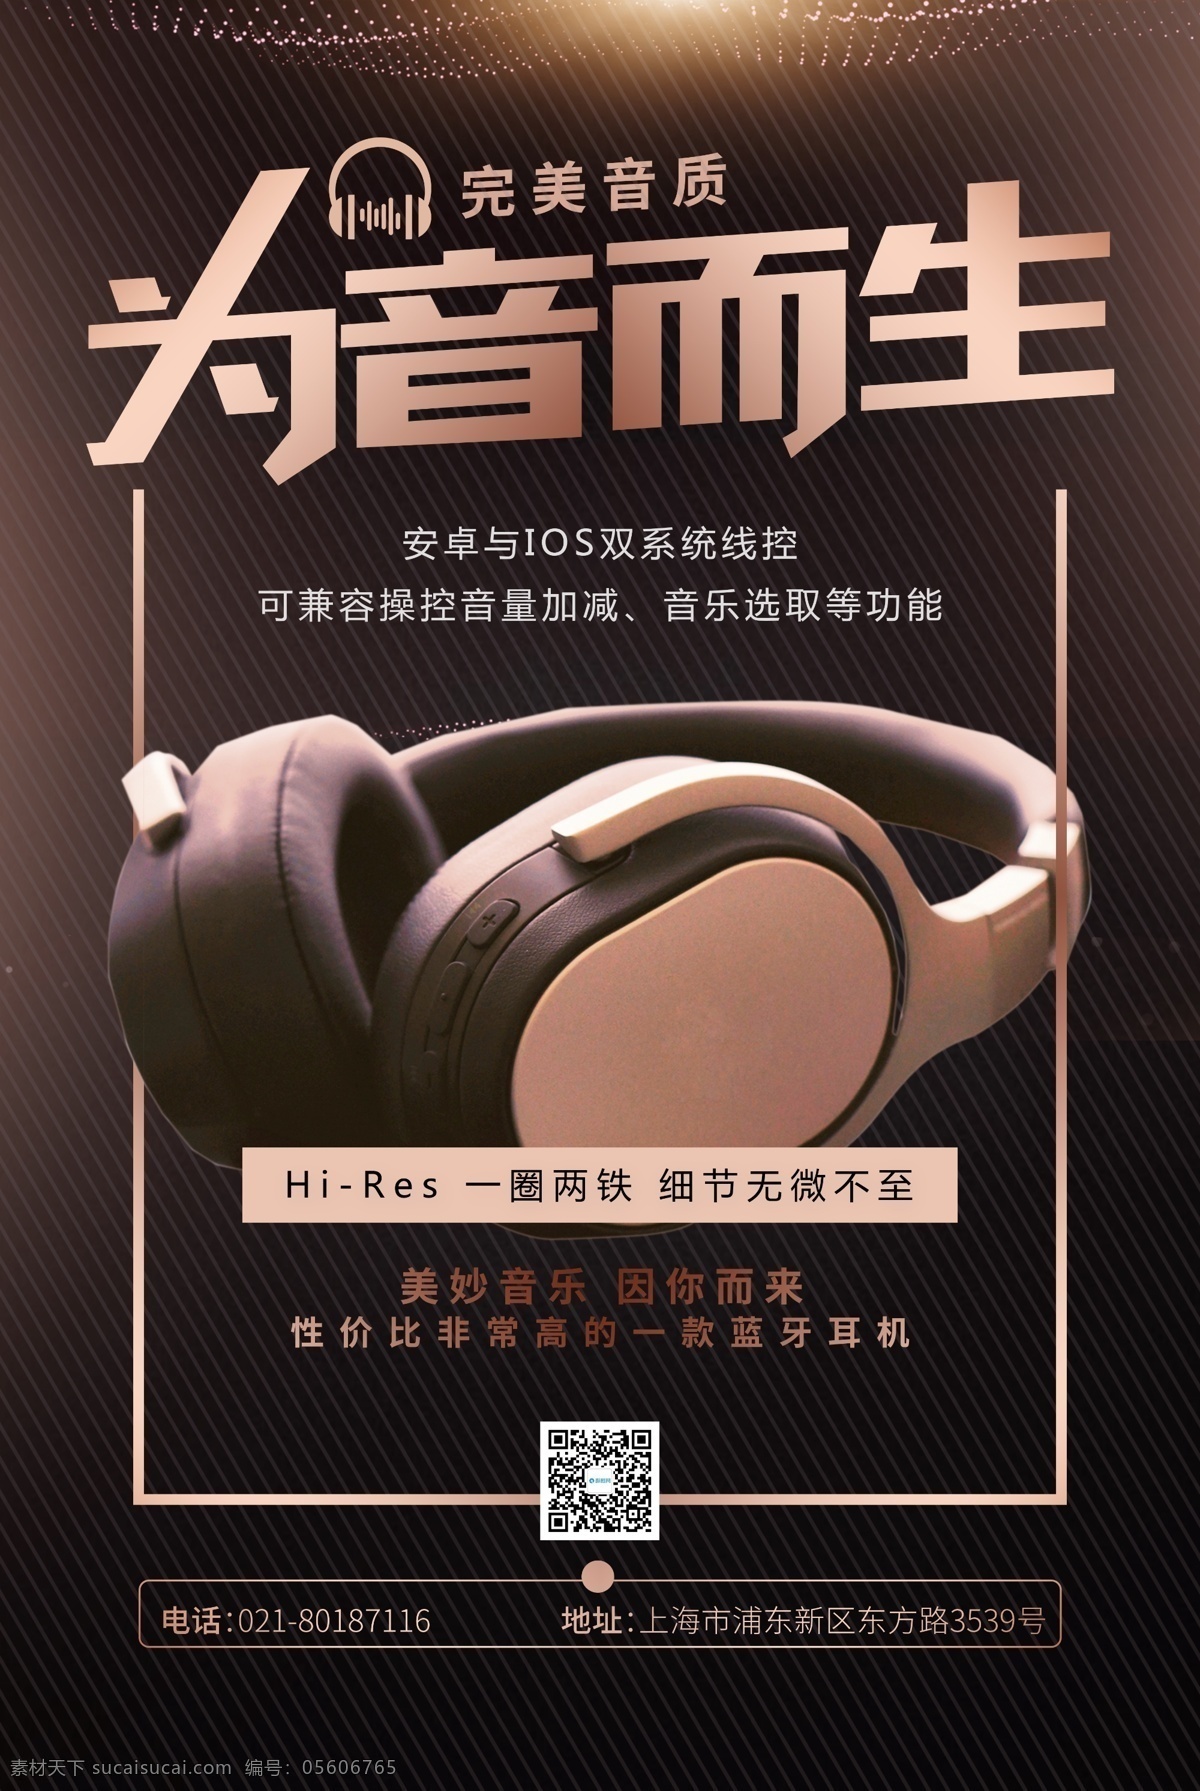 时尚 大气 耳机 促销 海报 耳机海报 耳机促销 电子产品 音响 音乐 智能耳机 品质耳机